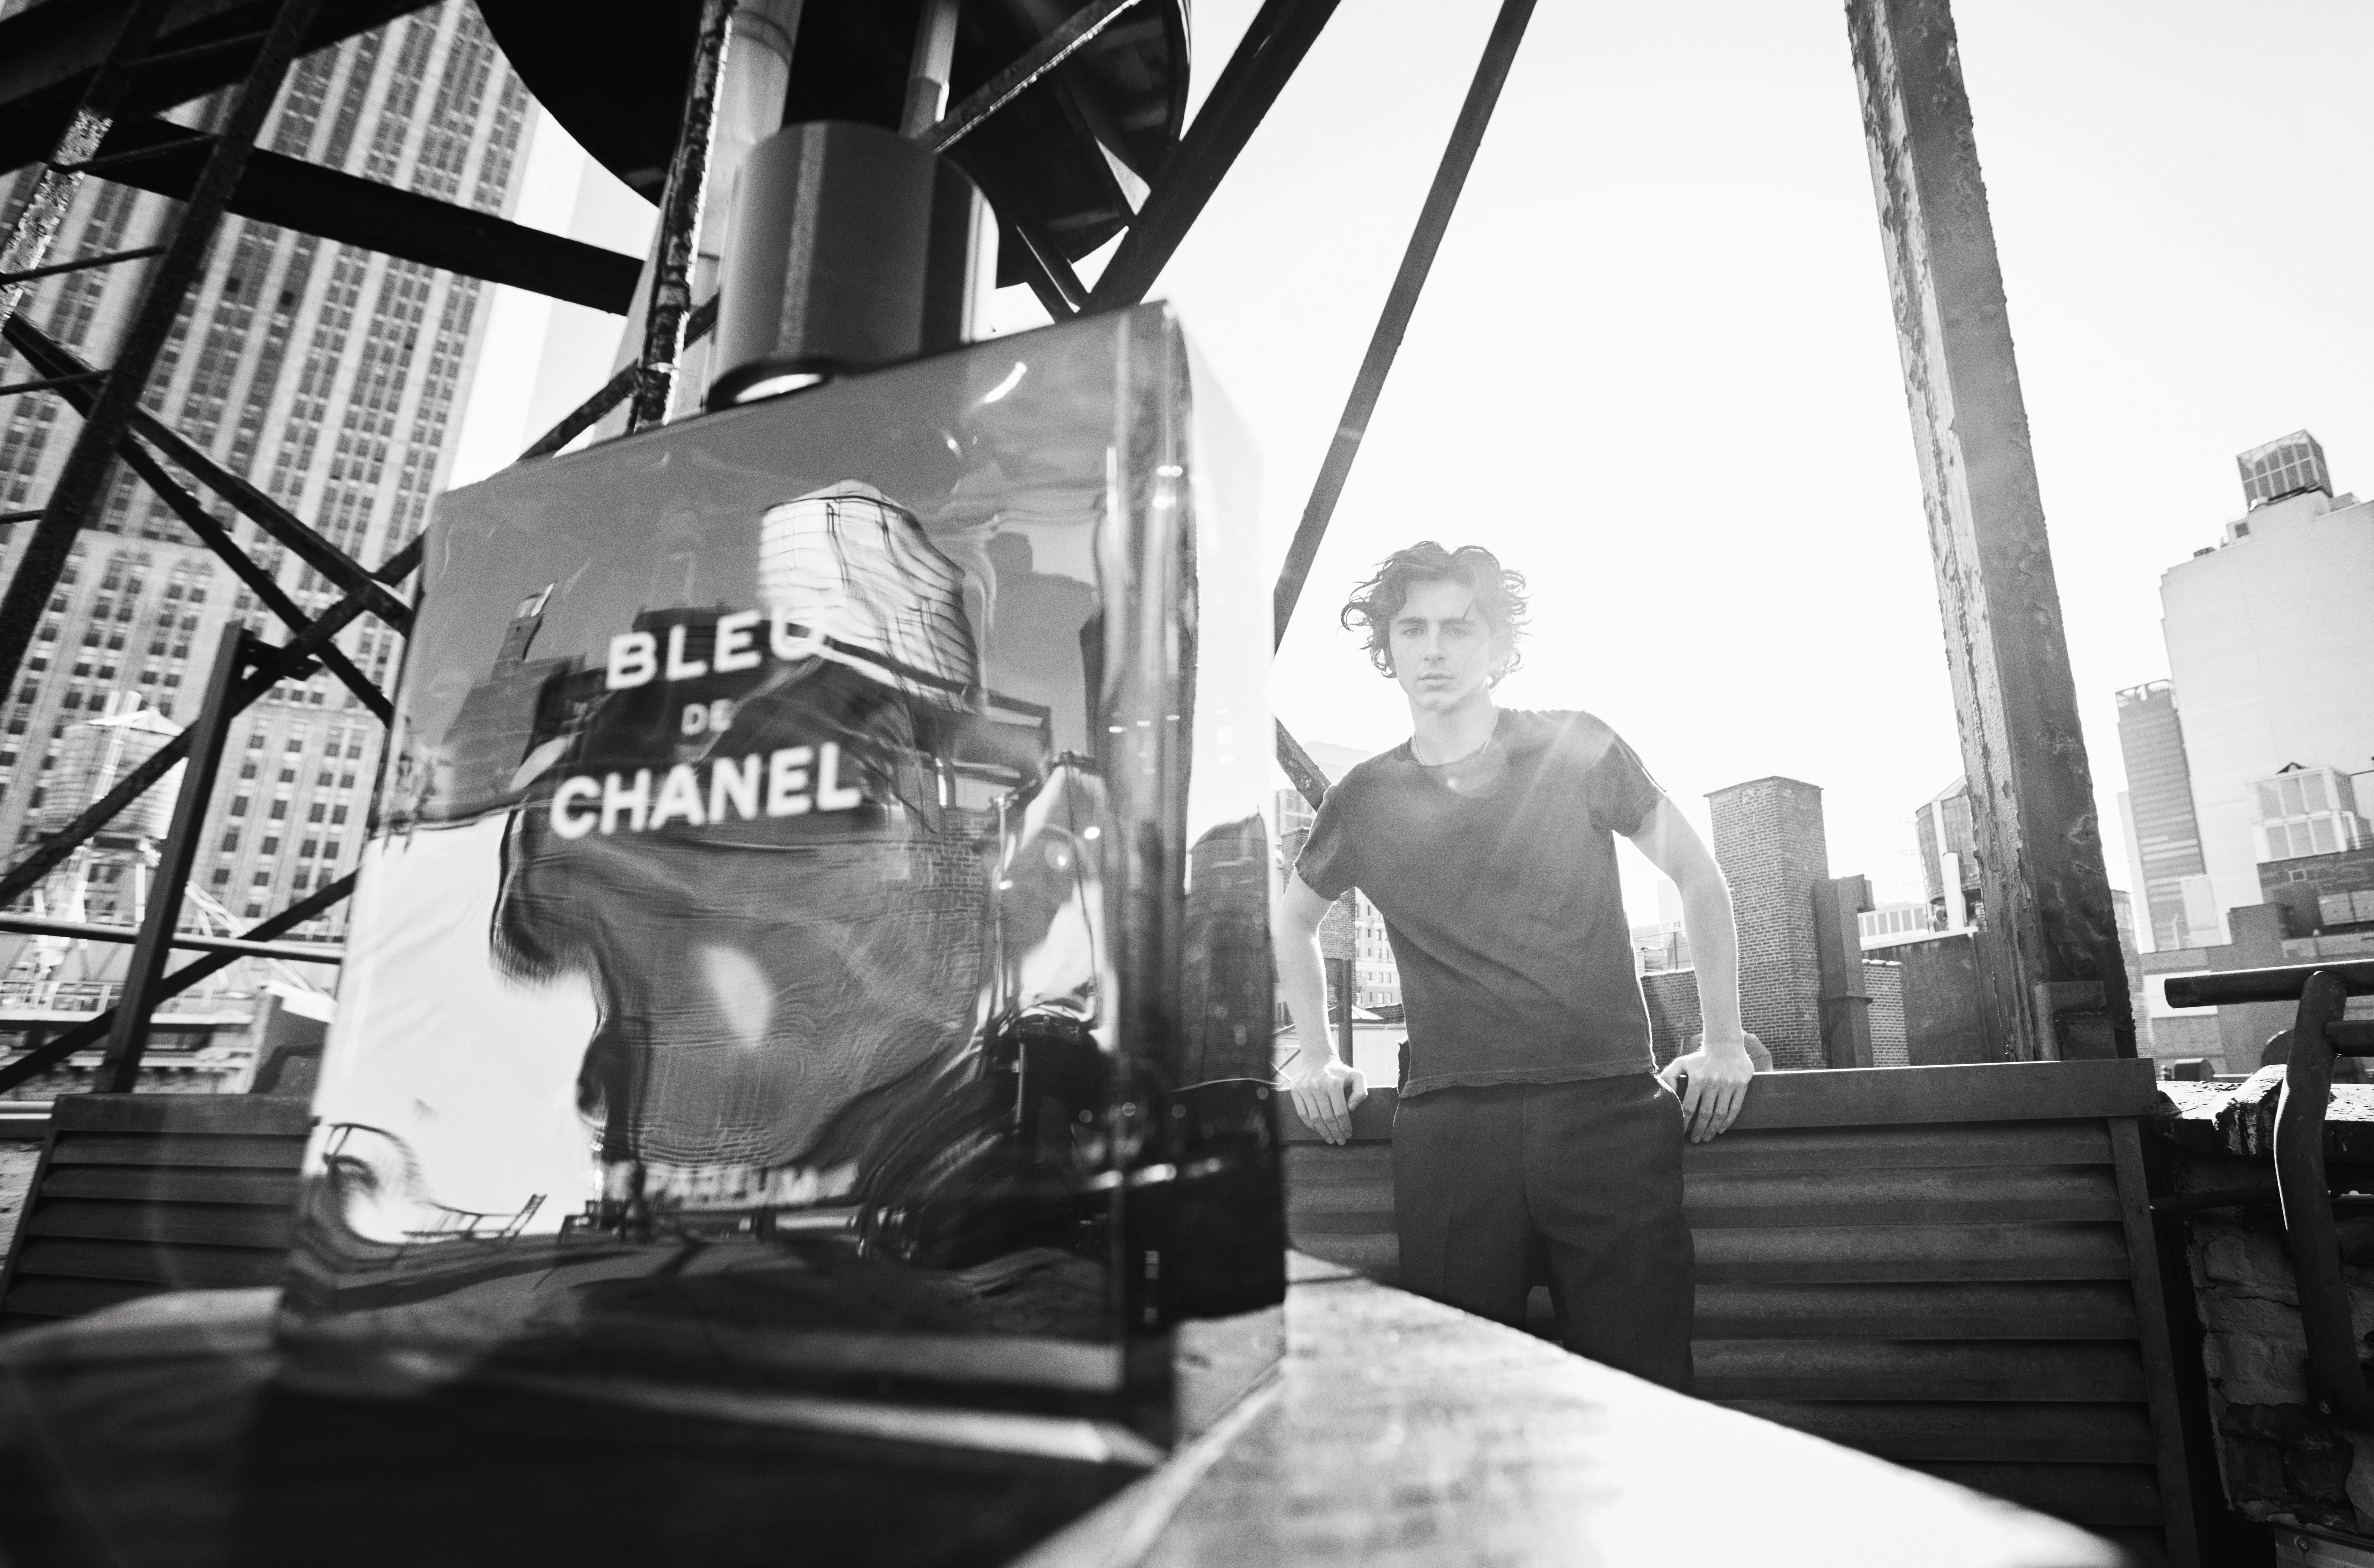 Bleu de Chanel Chanel Colonia  una fragancia para Hombres 2010